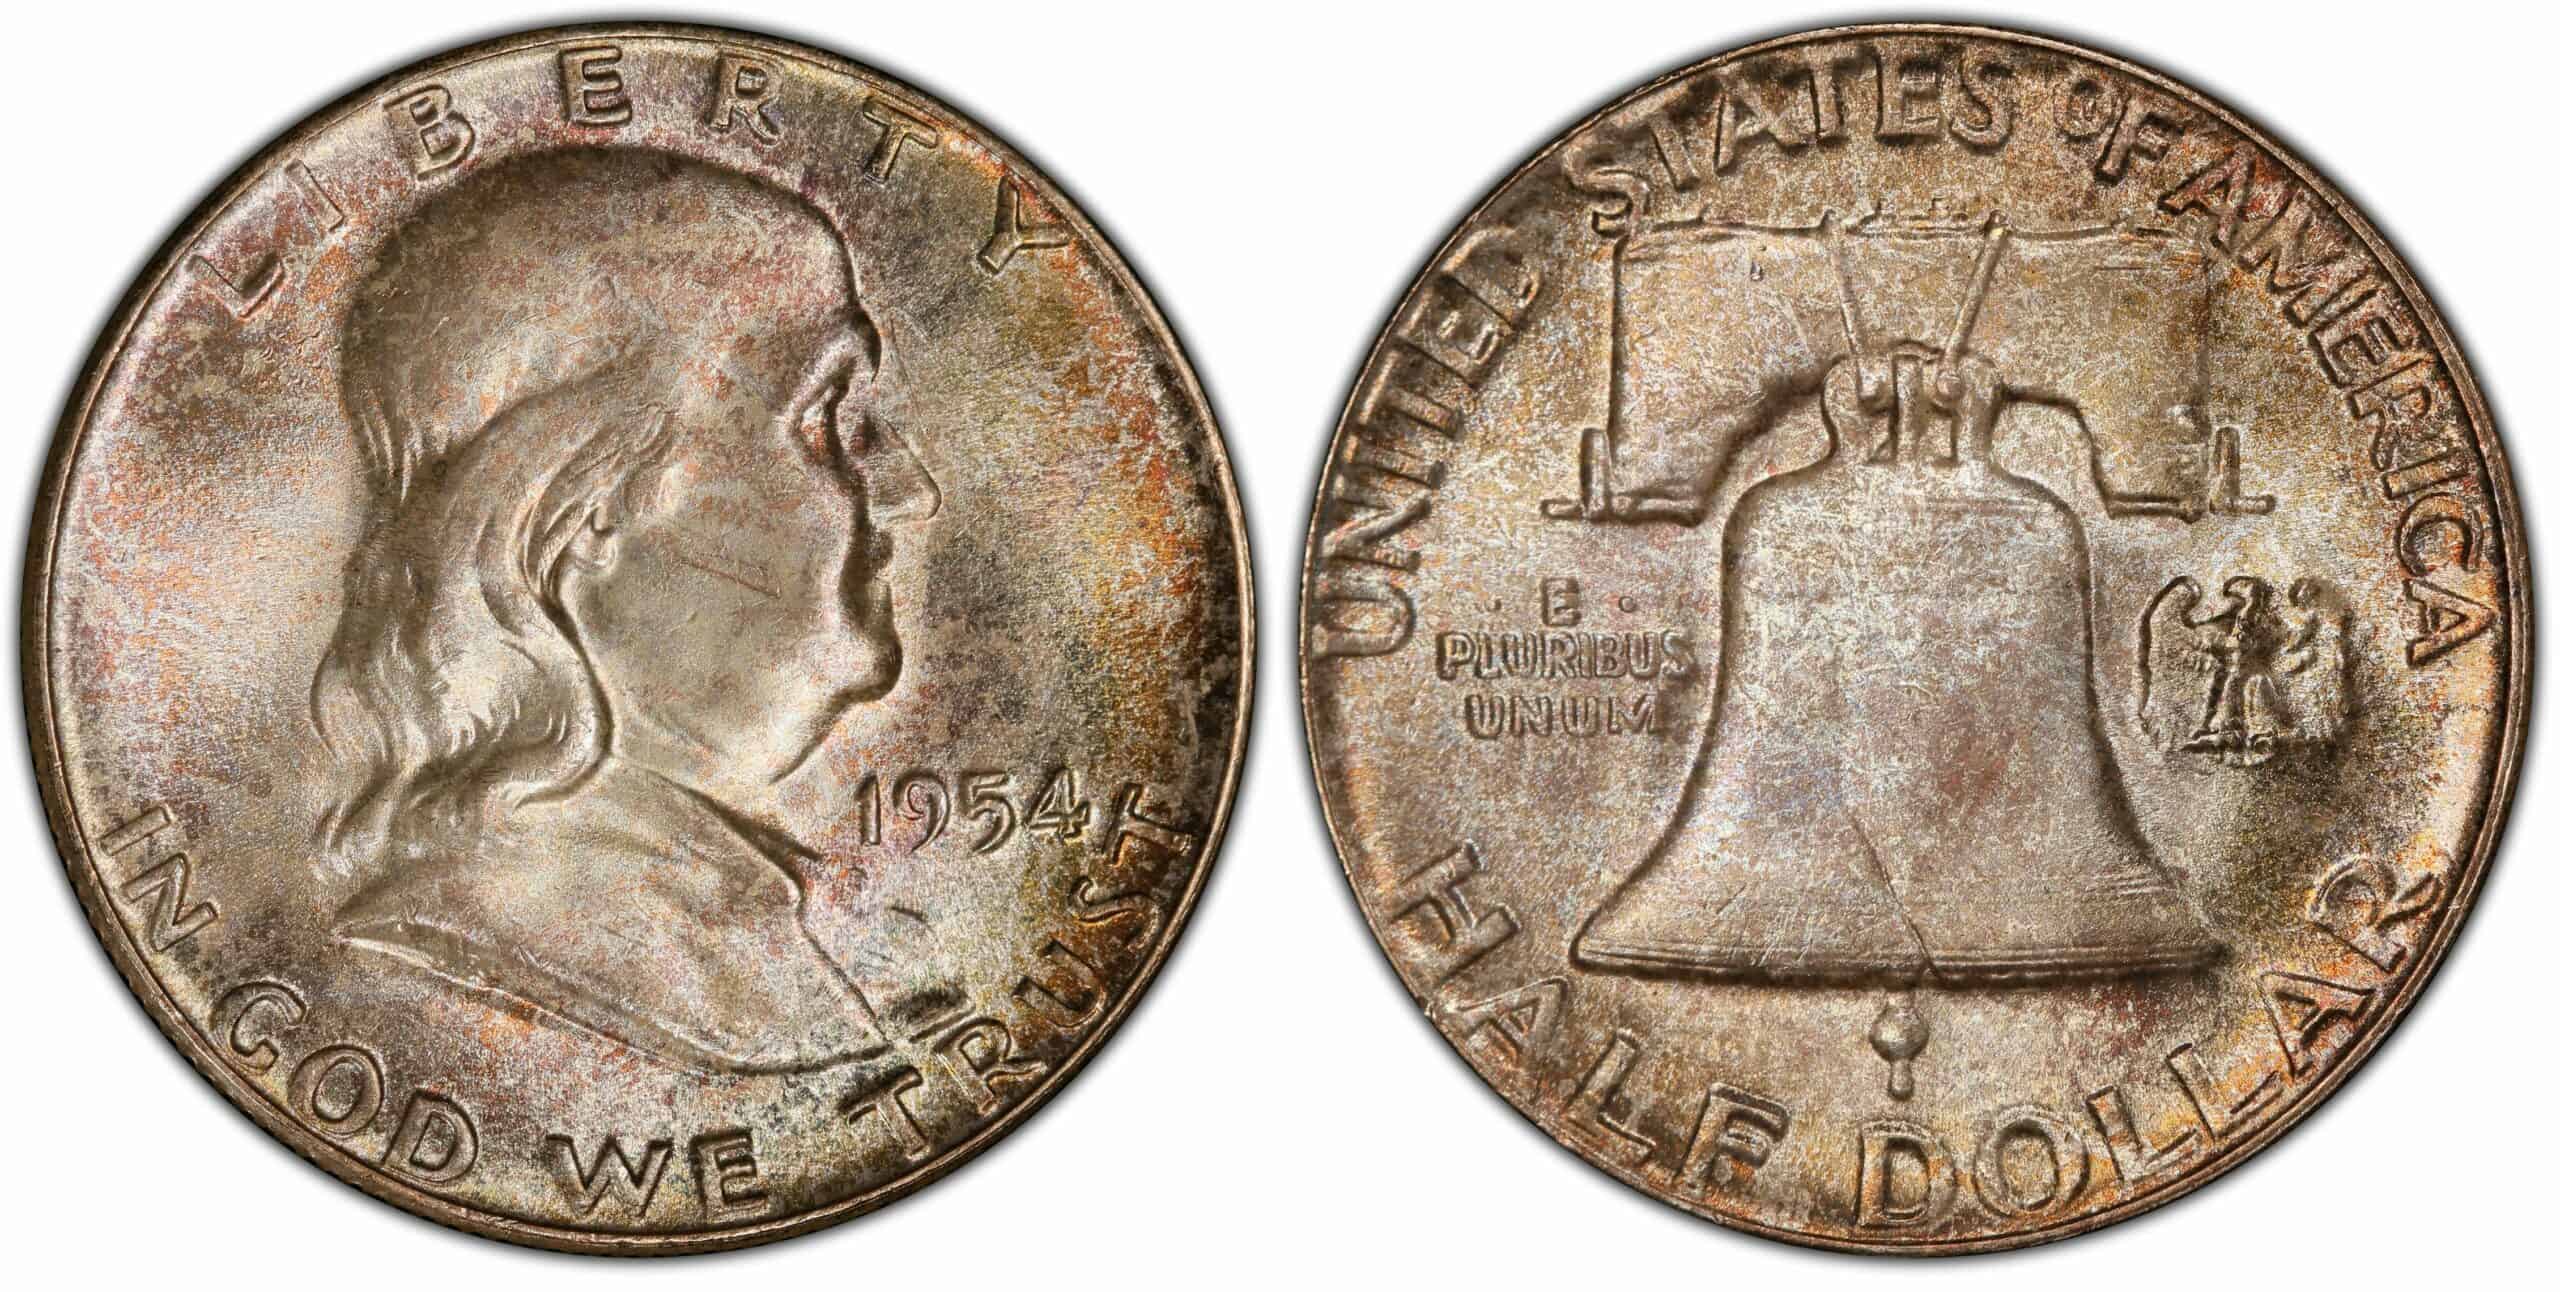 1954 Half Dollar No Mint Mark Value